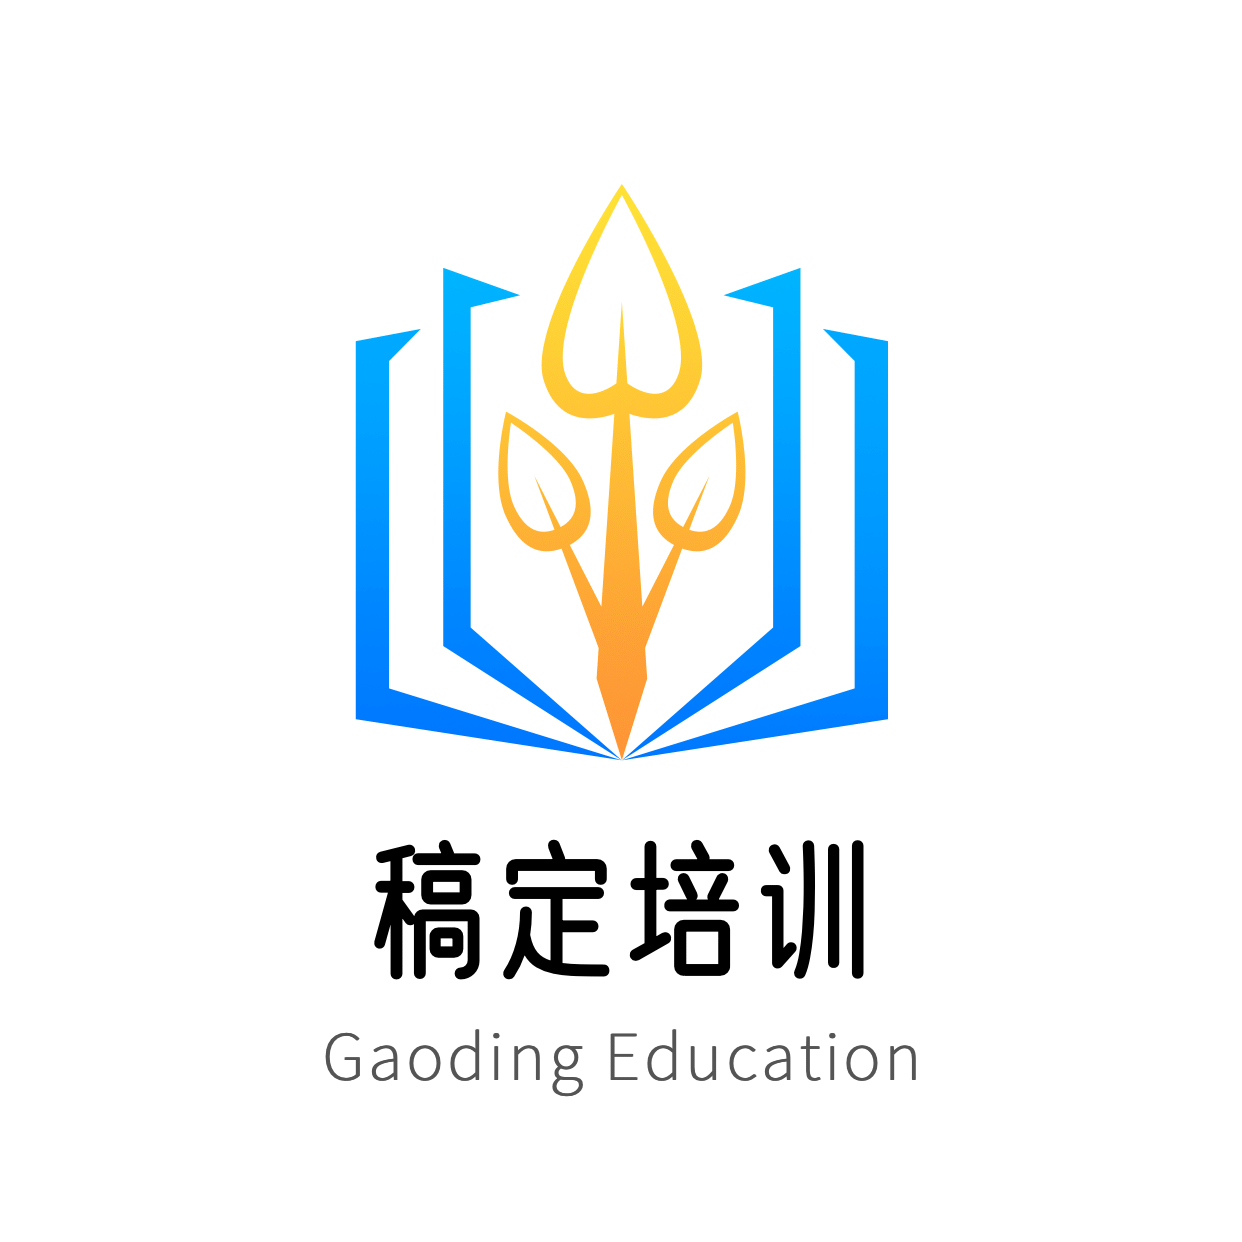 教育培训简约创意头像Logo